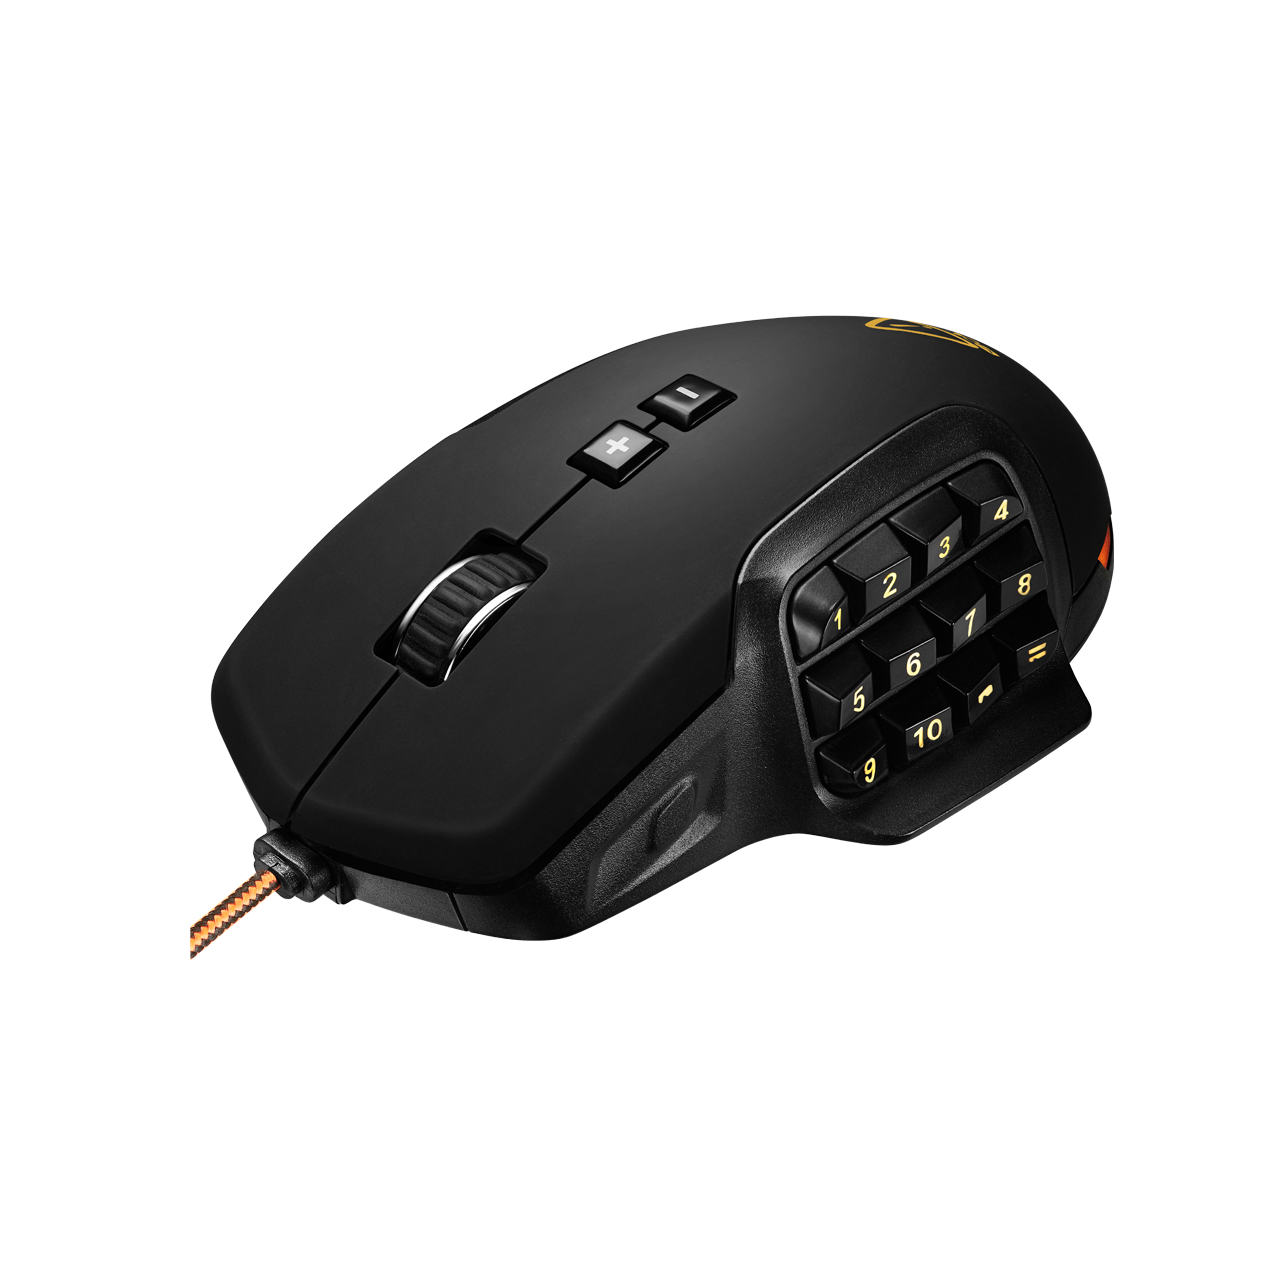 CND-SGM9 mouse